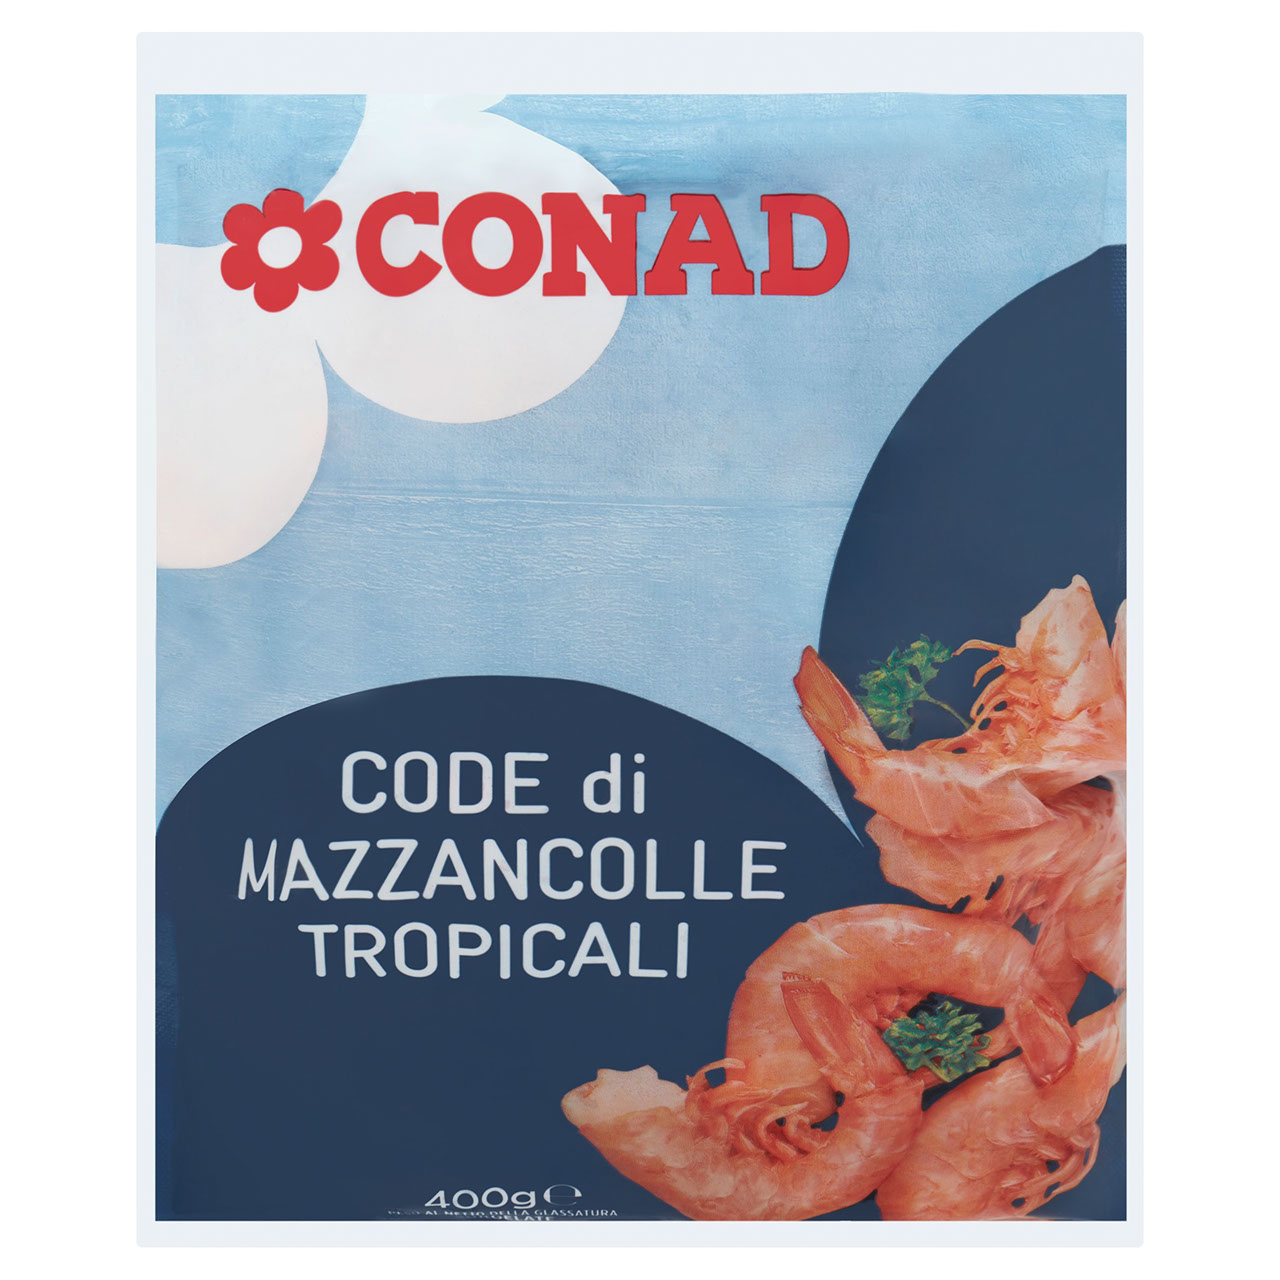 Code di Mazzancolle Conad in vendita online